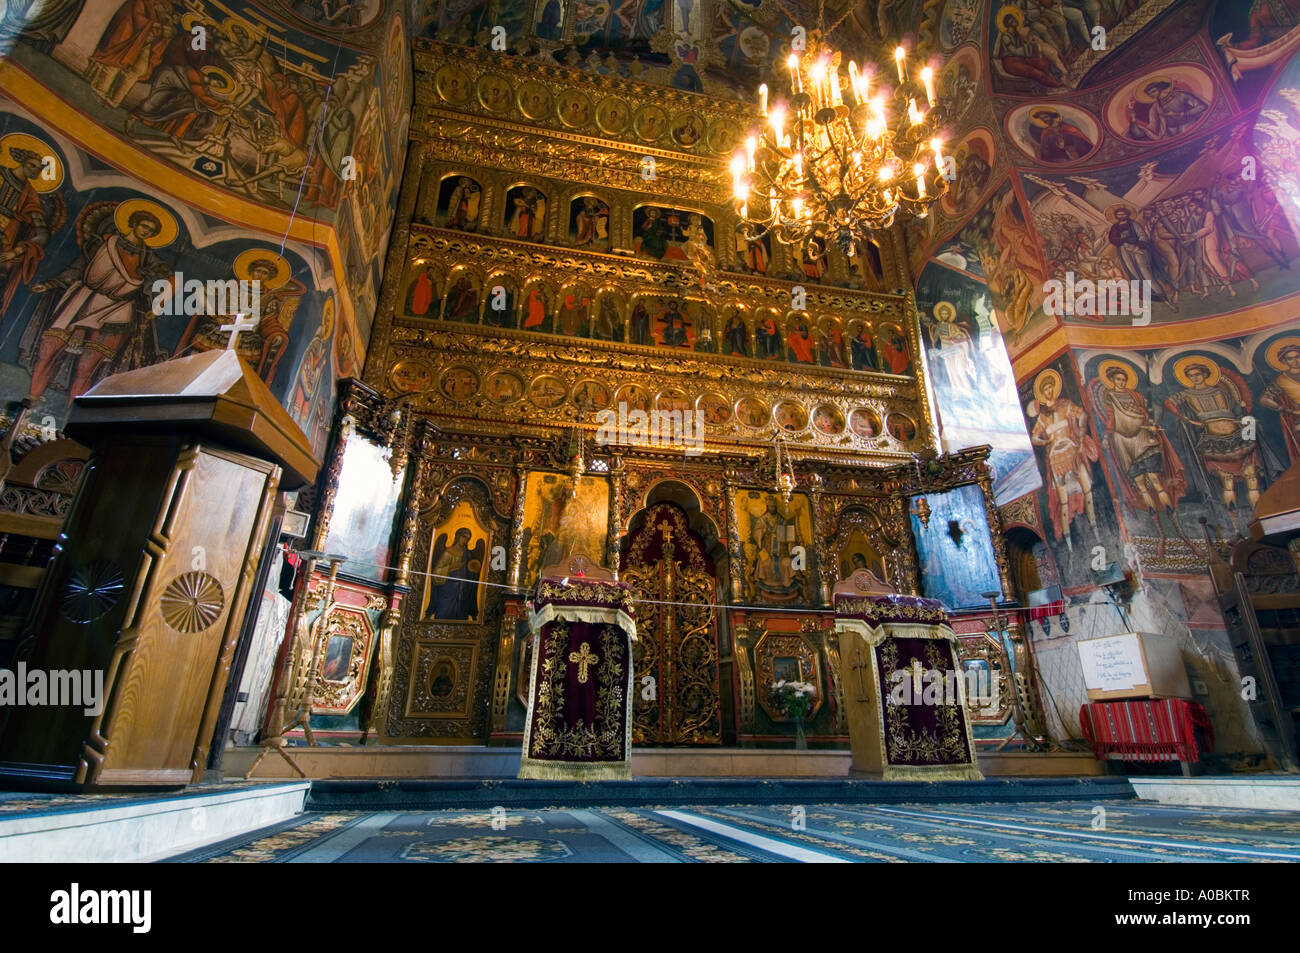 Europa Moldavia Romania Bucovina Monastero Moldovita Foto Stock